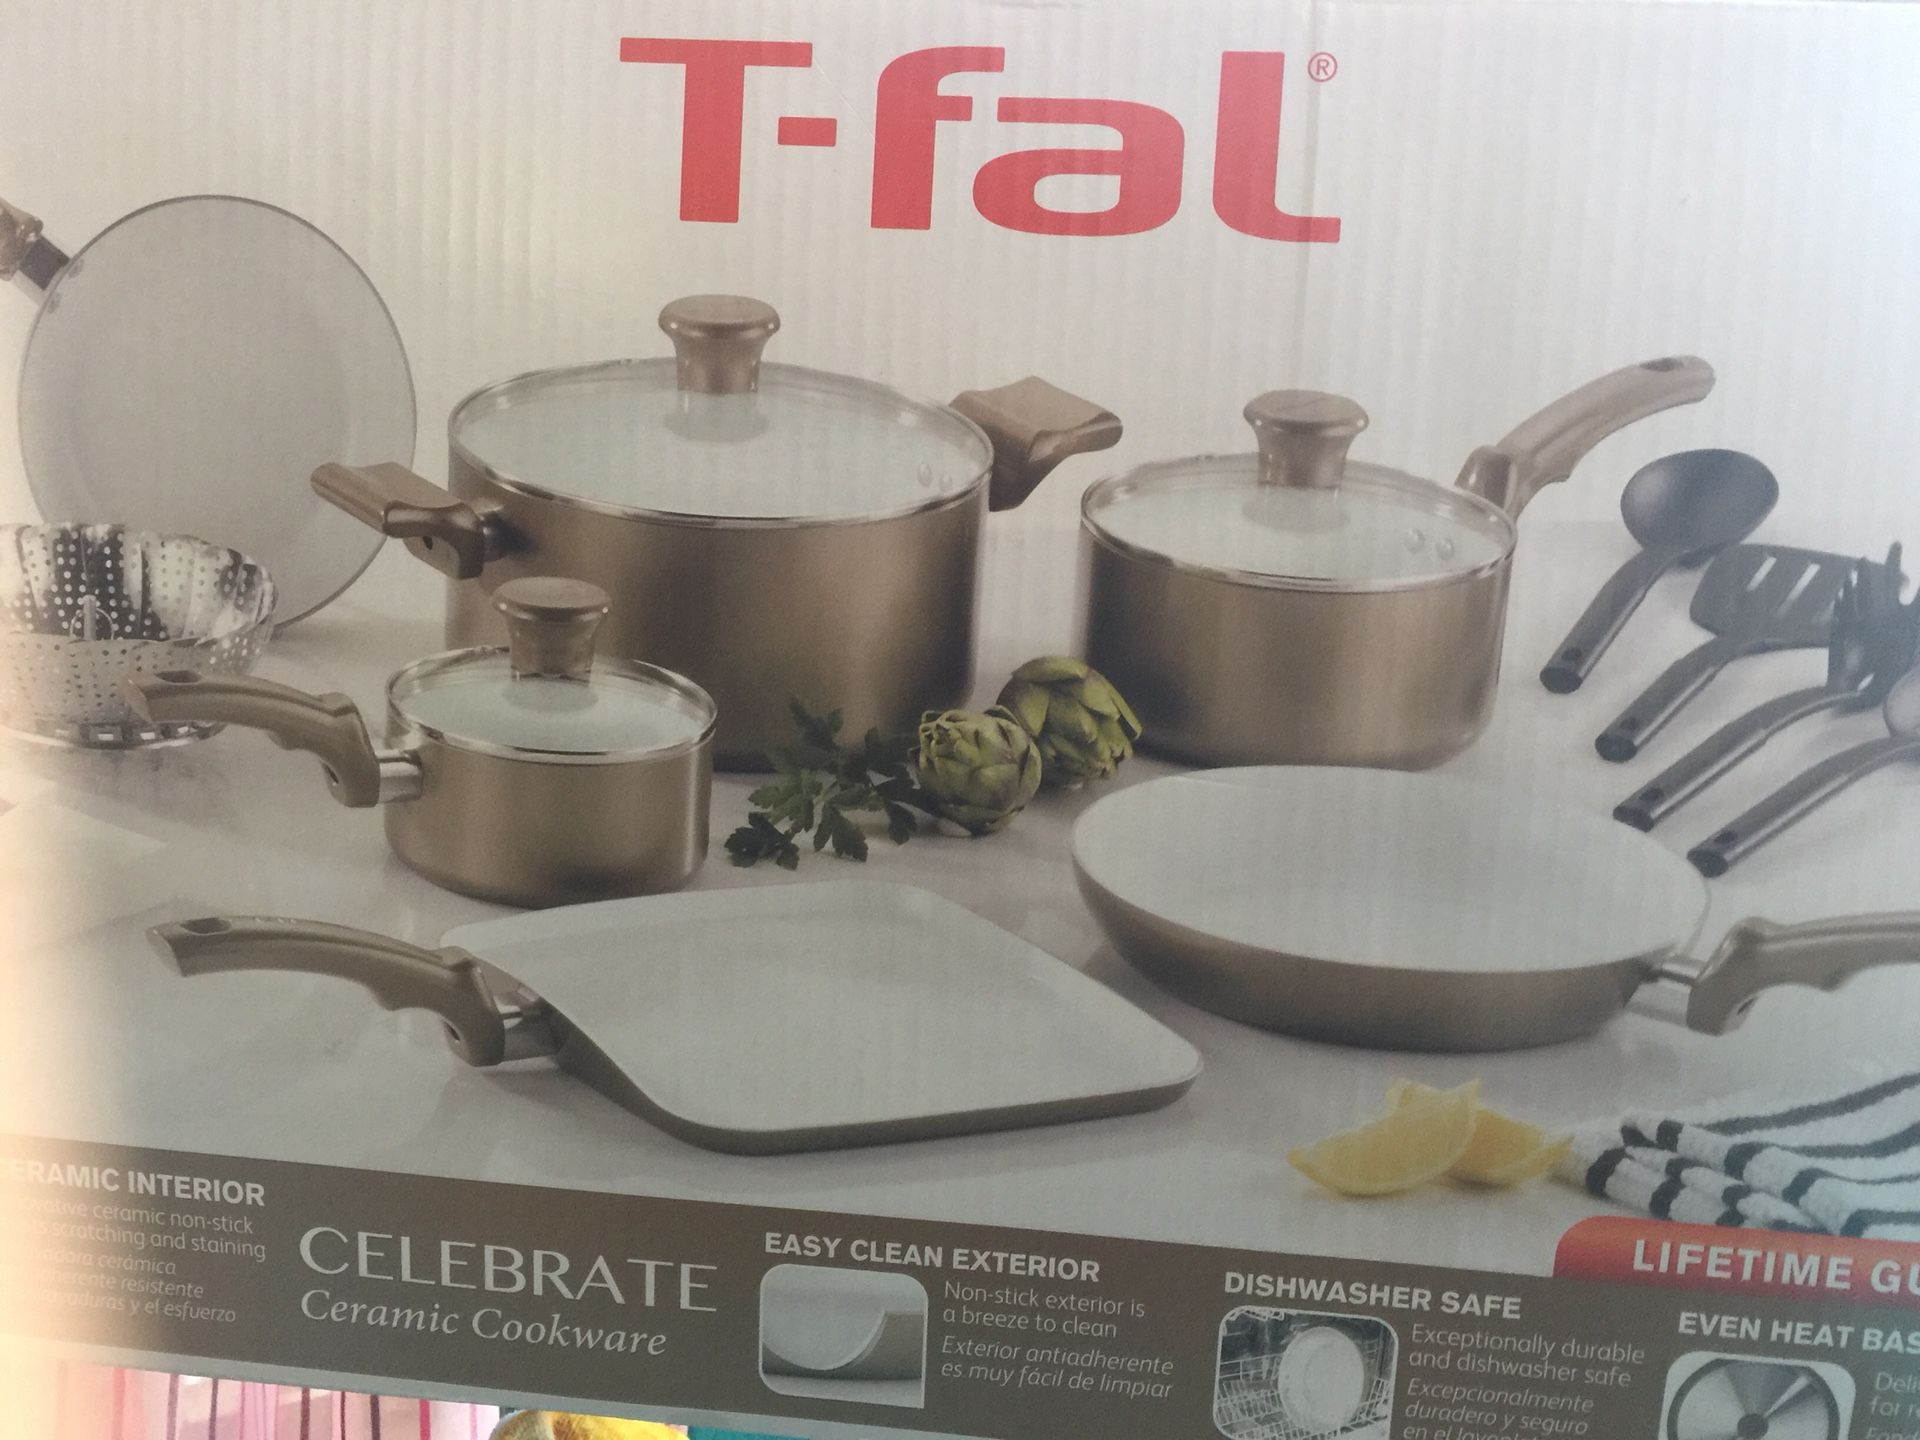 T-fal celebrate ceramic cookware 14 pcs (brand new in box)